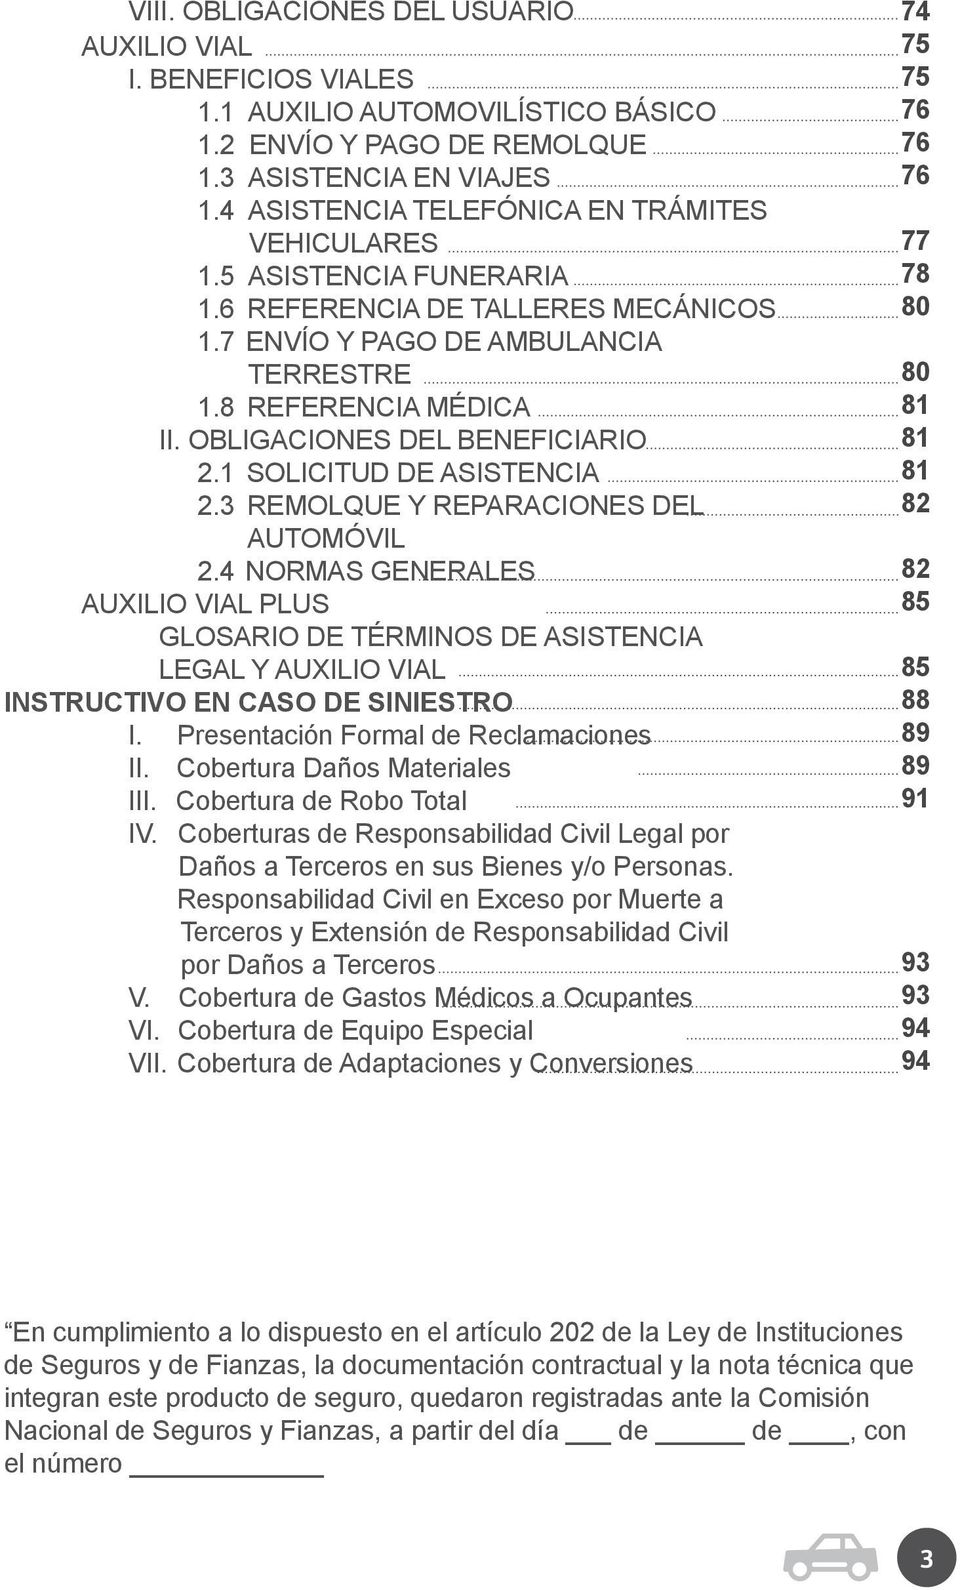 OBLIGACIONES DEL BENEFICIARIO 2.1 SOLICITUD DE ASISTENCIA 2.3 REMOLQUE Y REPARACIONES DEL AUTOMÓVIL 2.